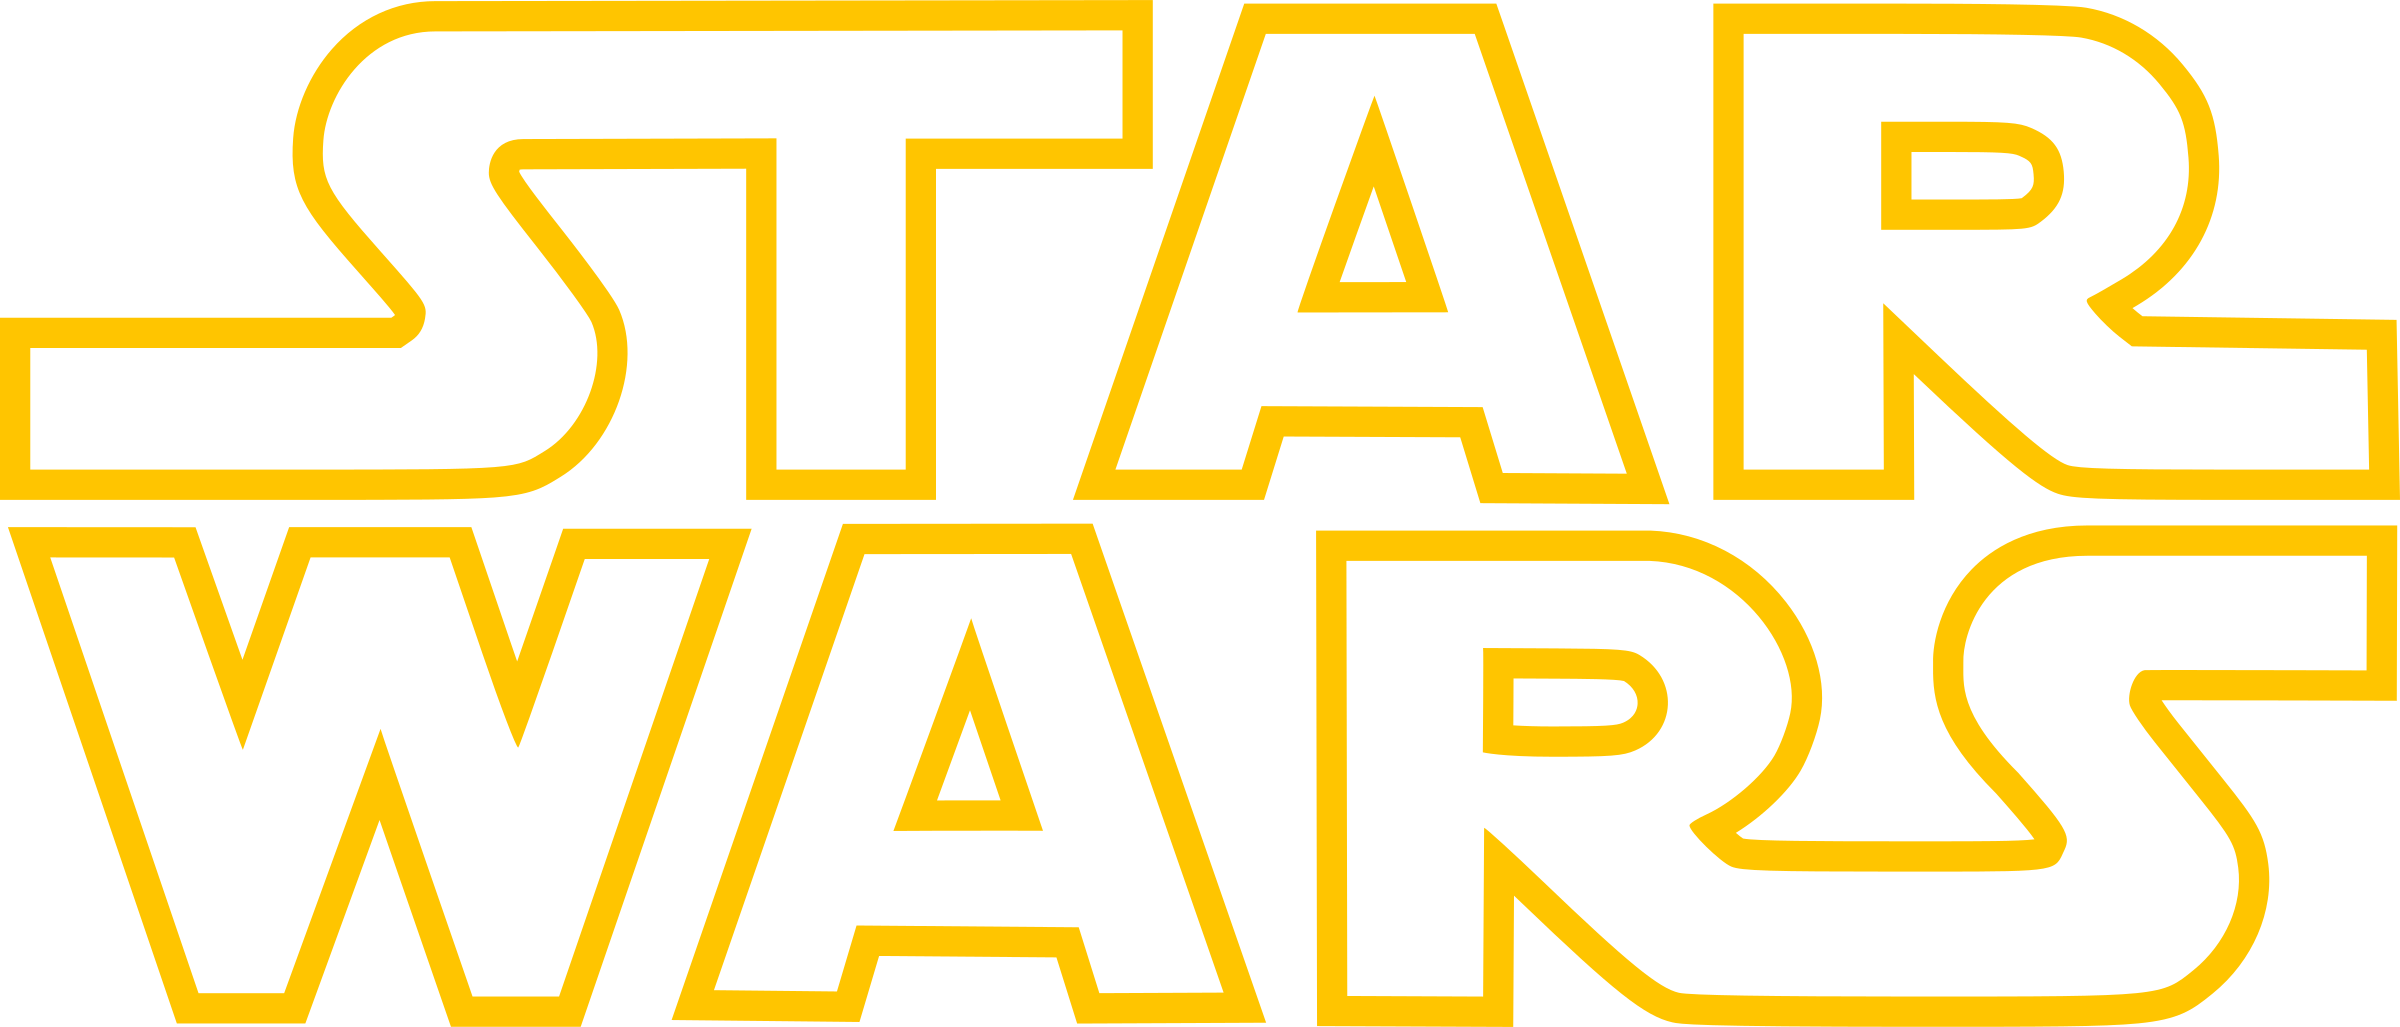 Star Wars logo PNG imagen de alta calidad